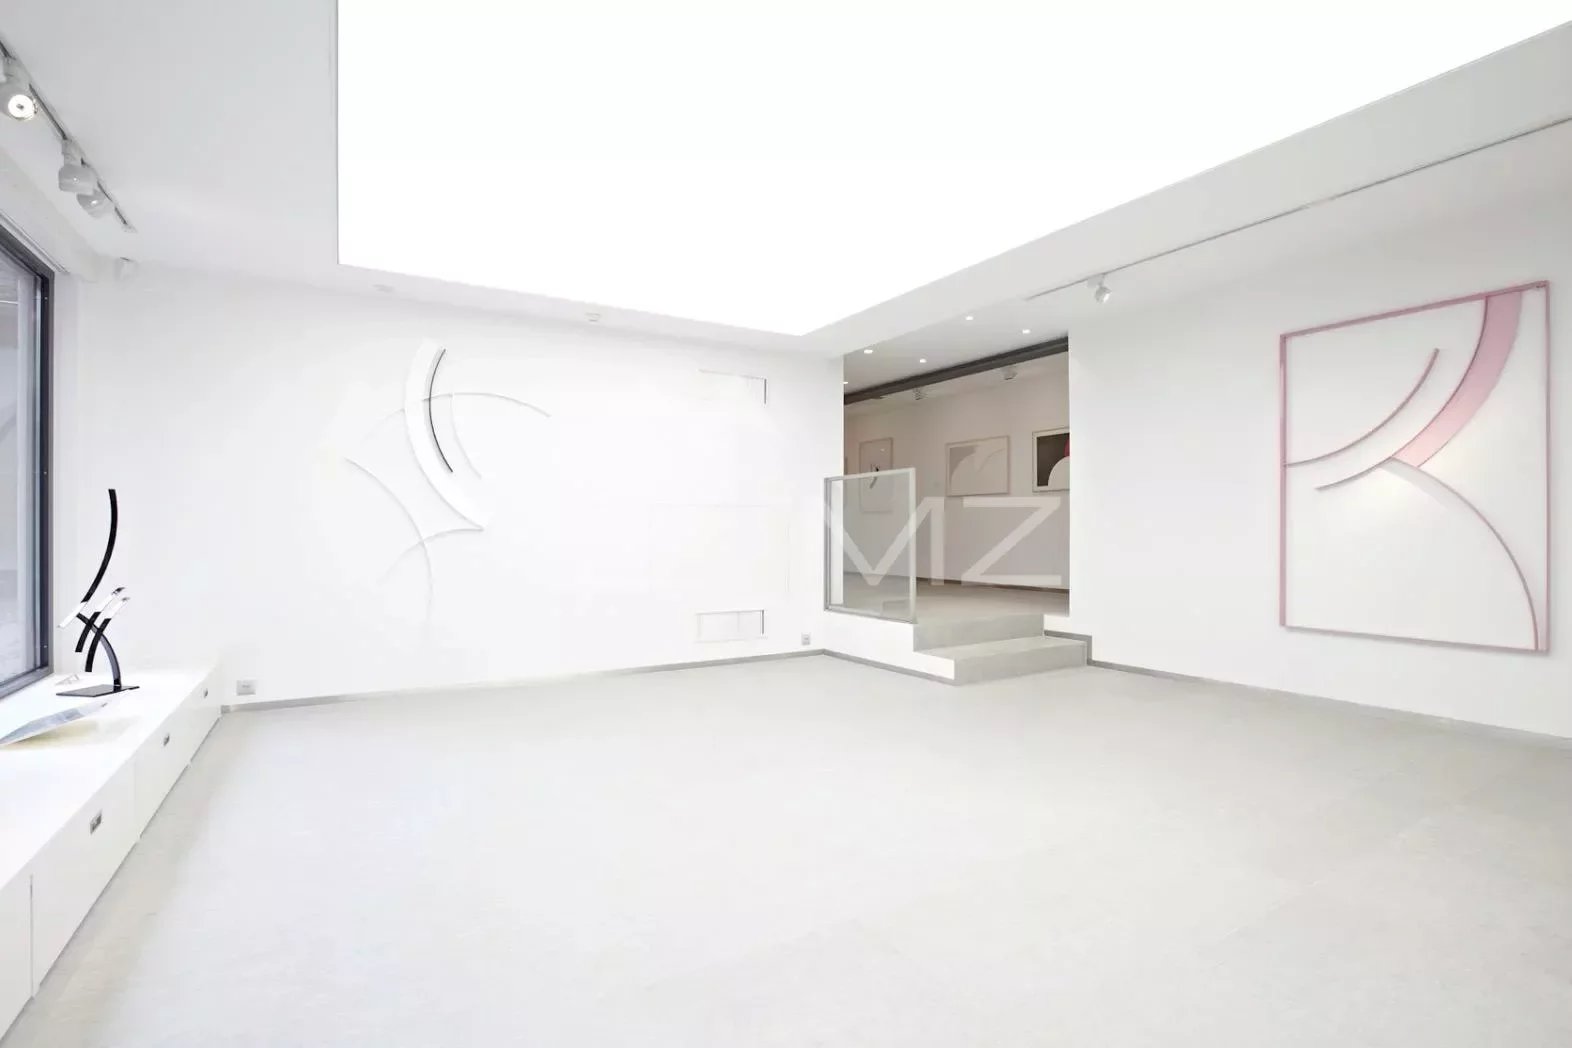 Gewerblicher Raum - Galerie Gstaad